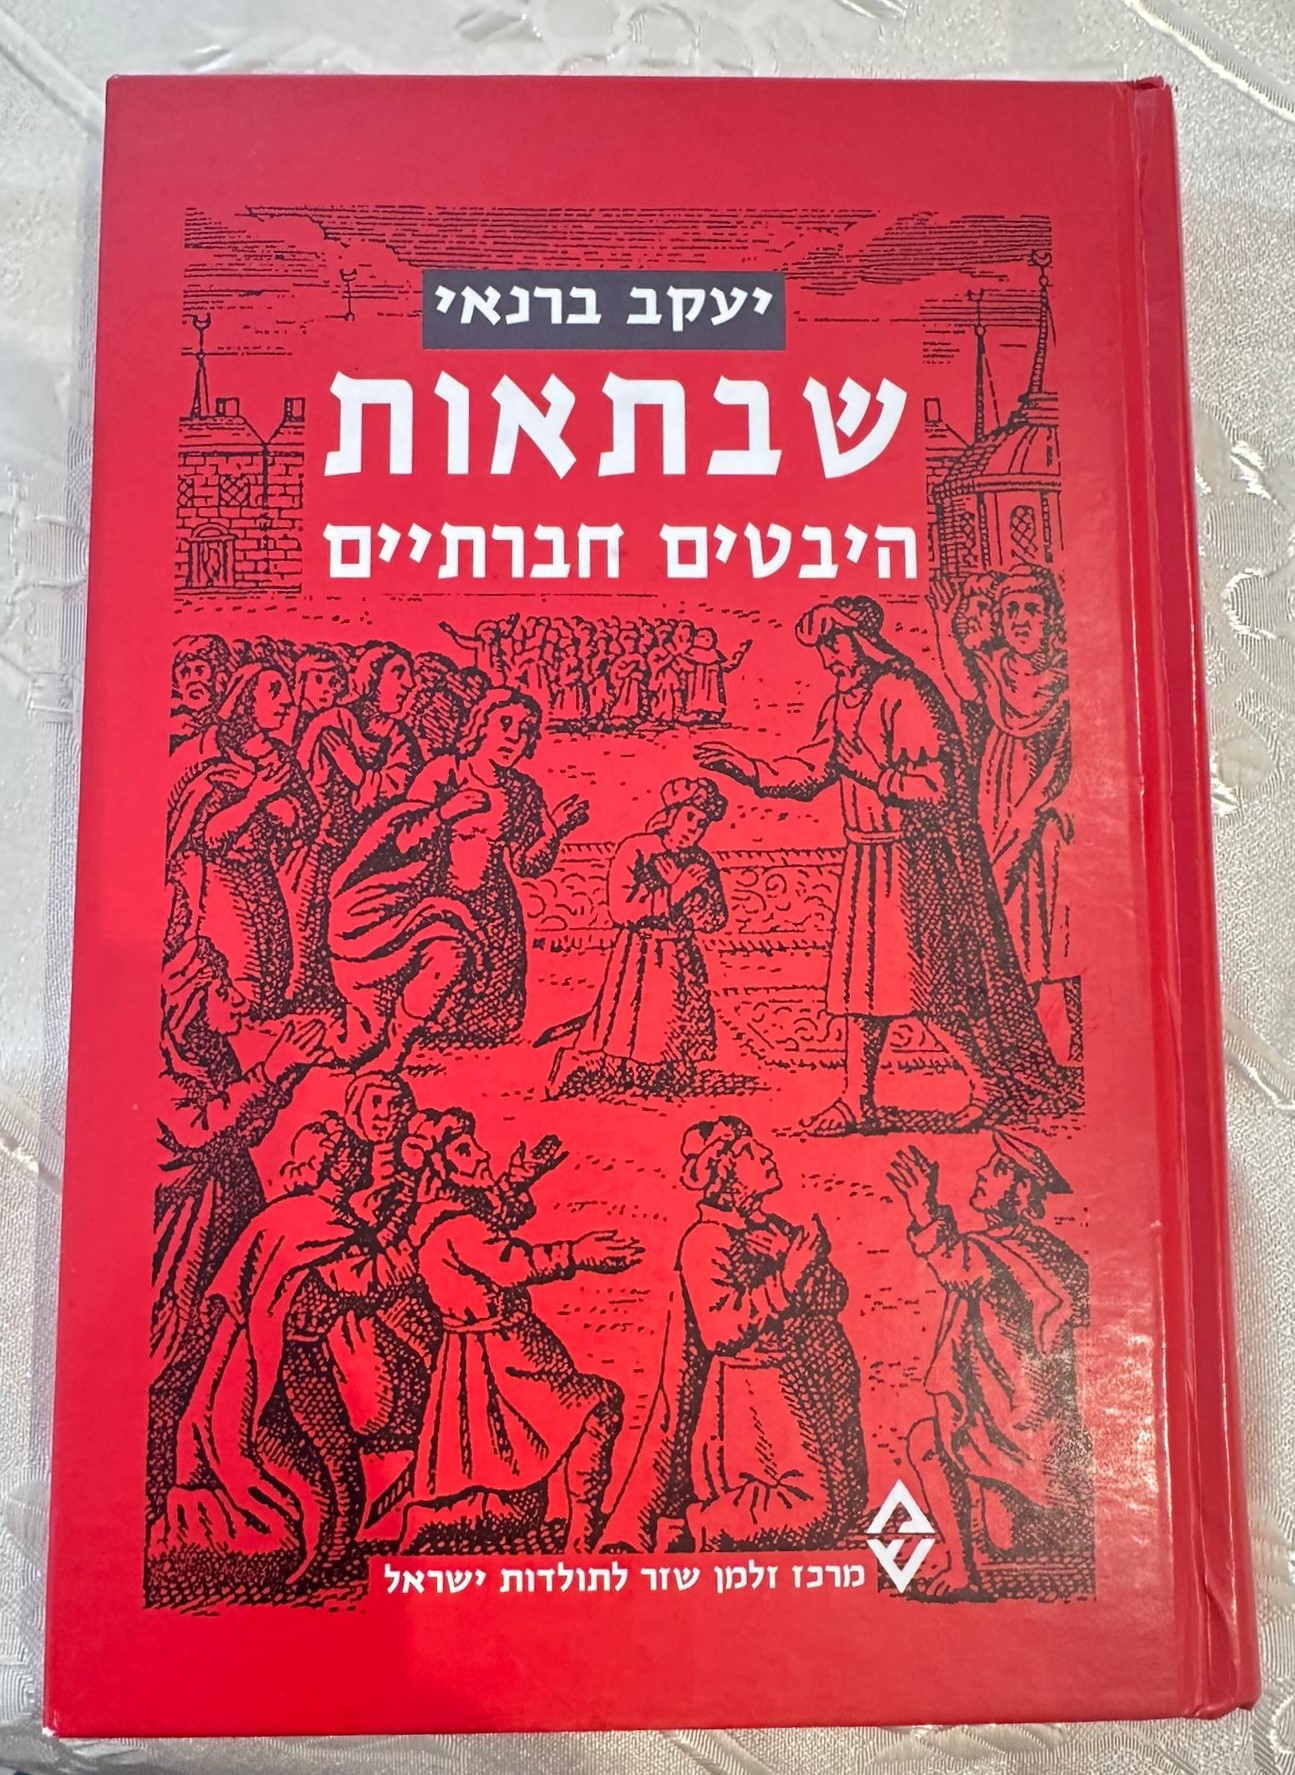 Shabbat - Social Aspects by Prof. Yaakov Barnai